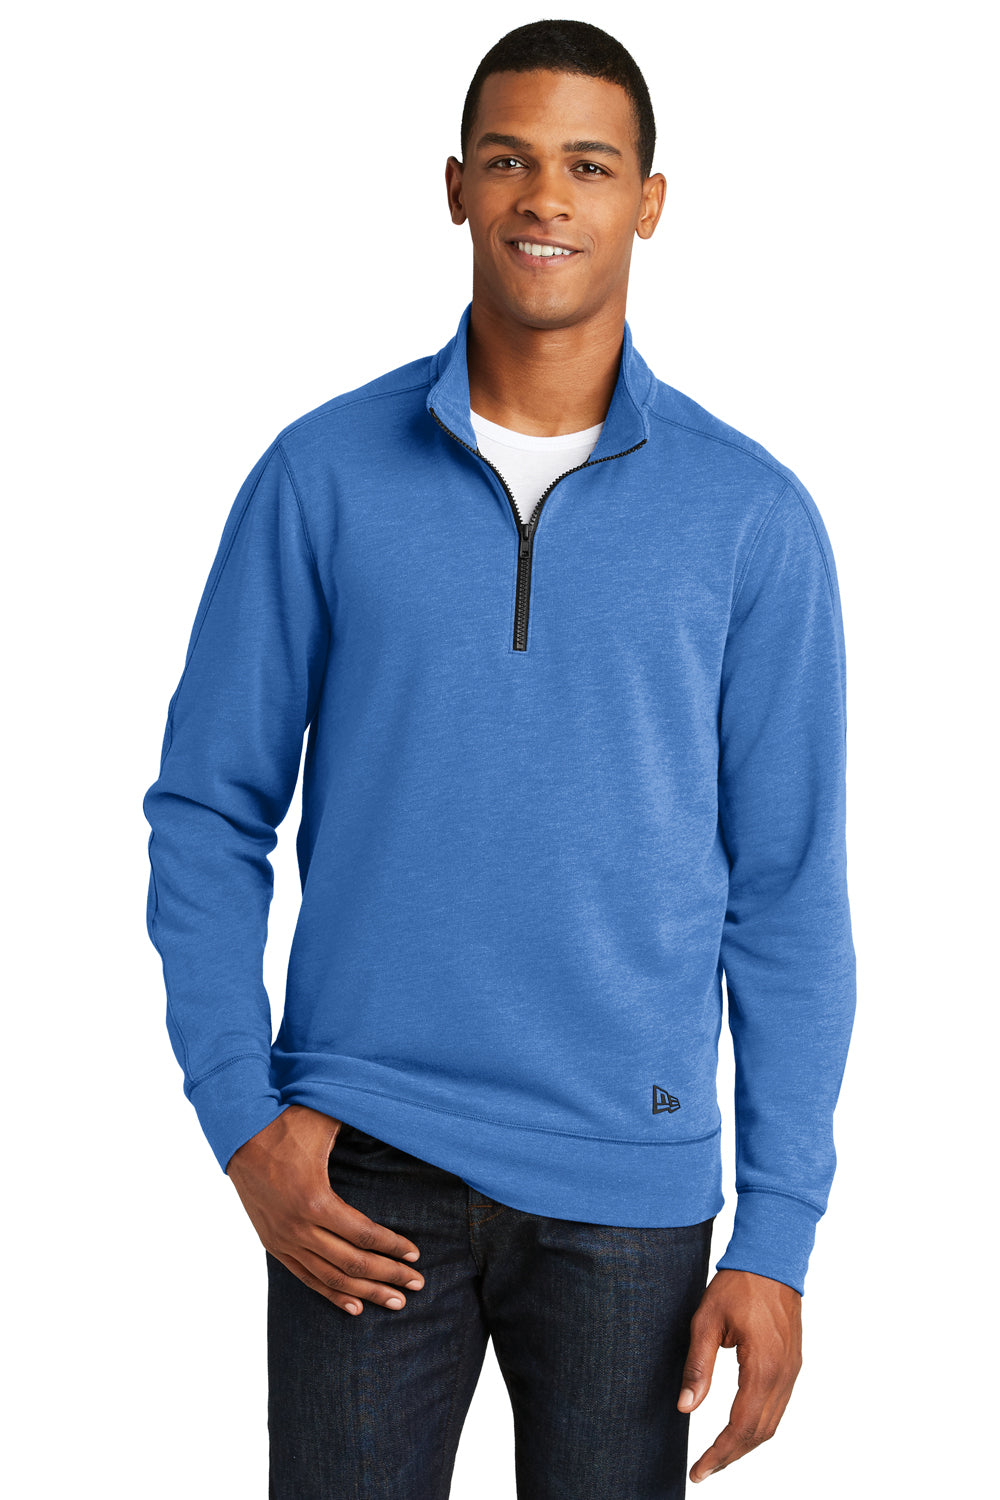 New Era NEA512 Mens Fleece 1/4 Zip Sweatshirt Heather Royal Blue Front